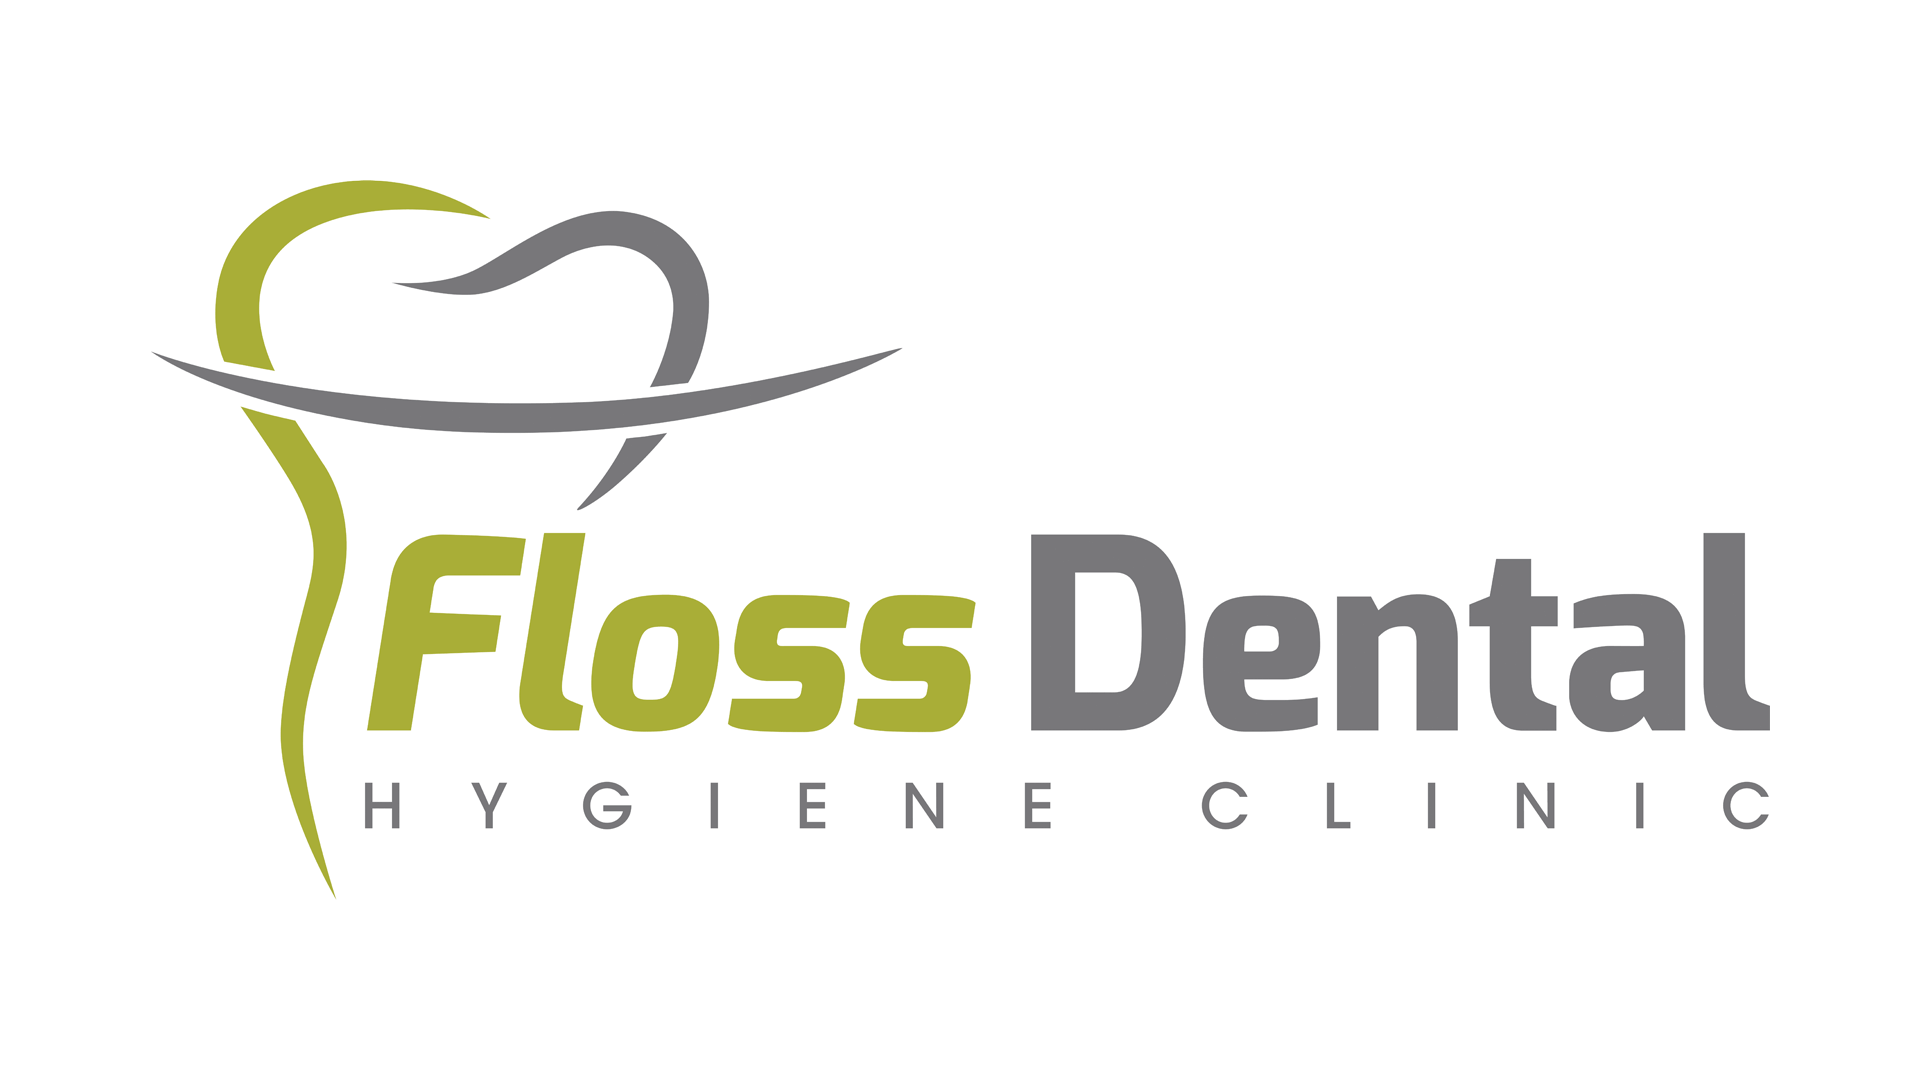 Floss Dental Hygiene Clinic